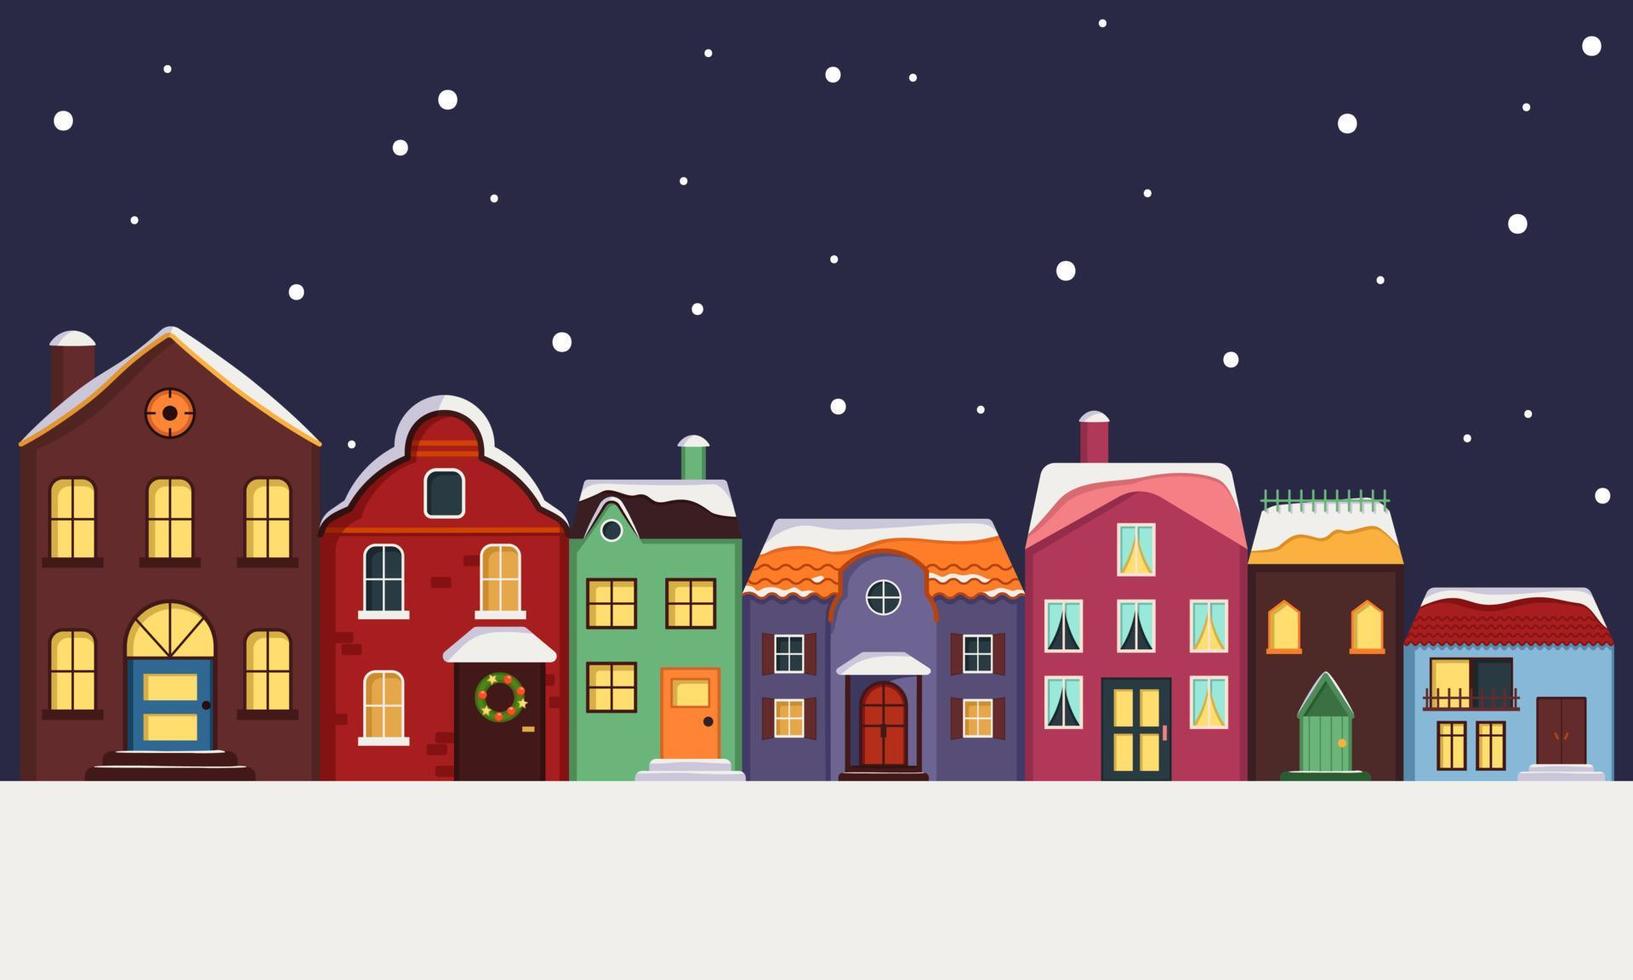 rue de la ville de maisons multicolores lumineuses avec toit recouvert de neige, lumière dans les fenêtres et flocons de neige en arrière-plan. décorations de joyeuses fêtes pour le nouvel an et noël. éléments hivernaux et festifs vecteur